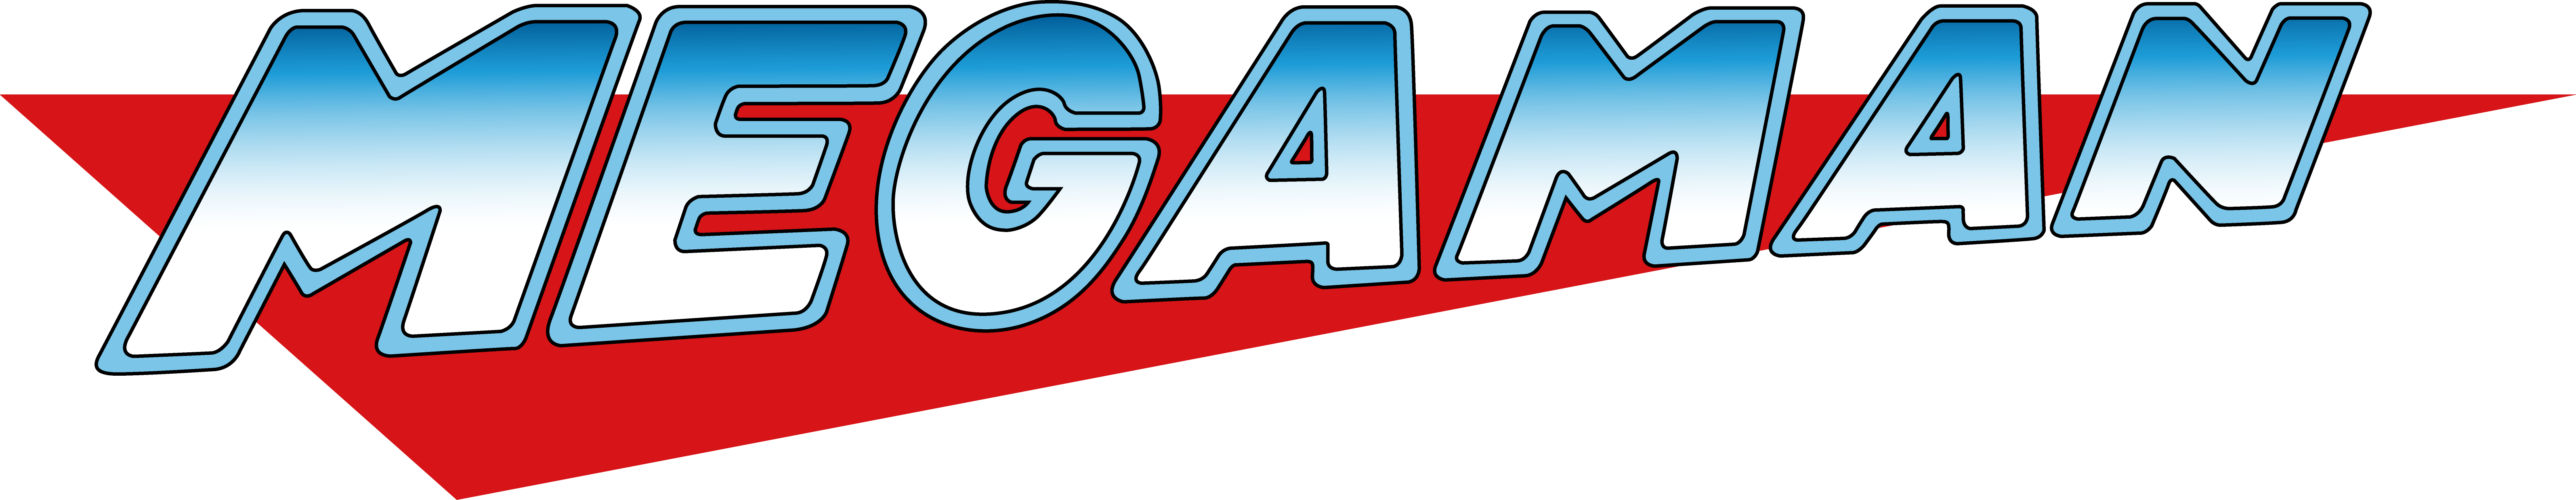 Mega Man Title